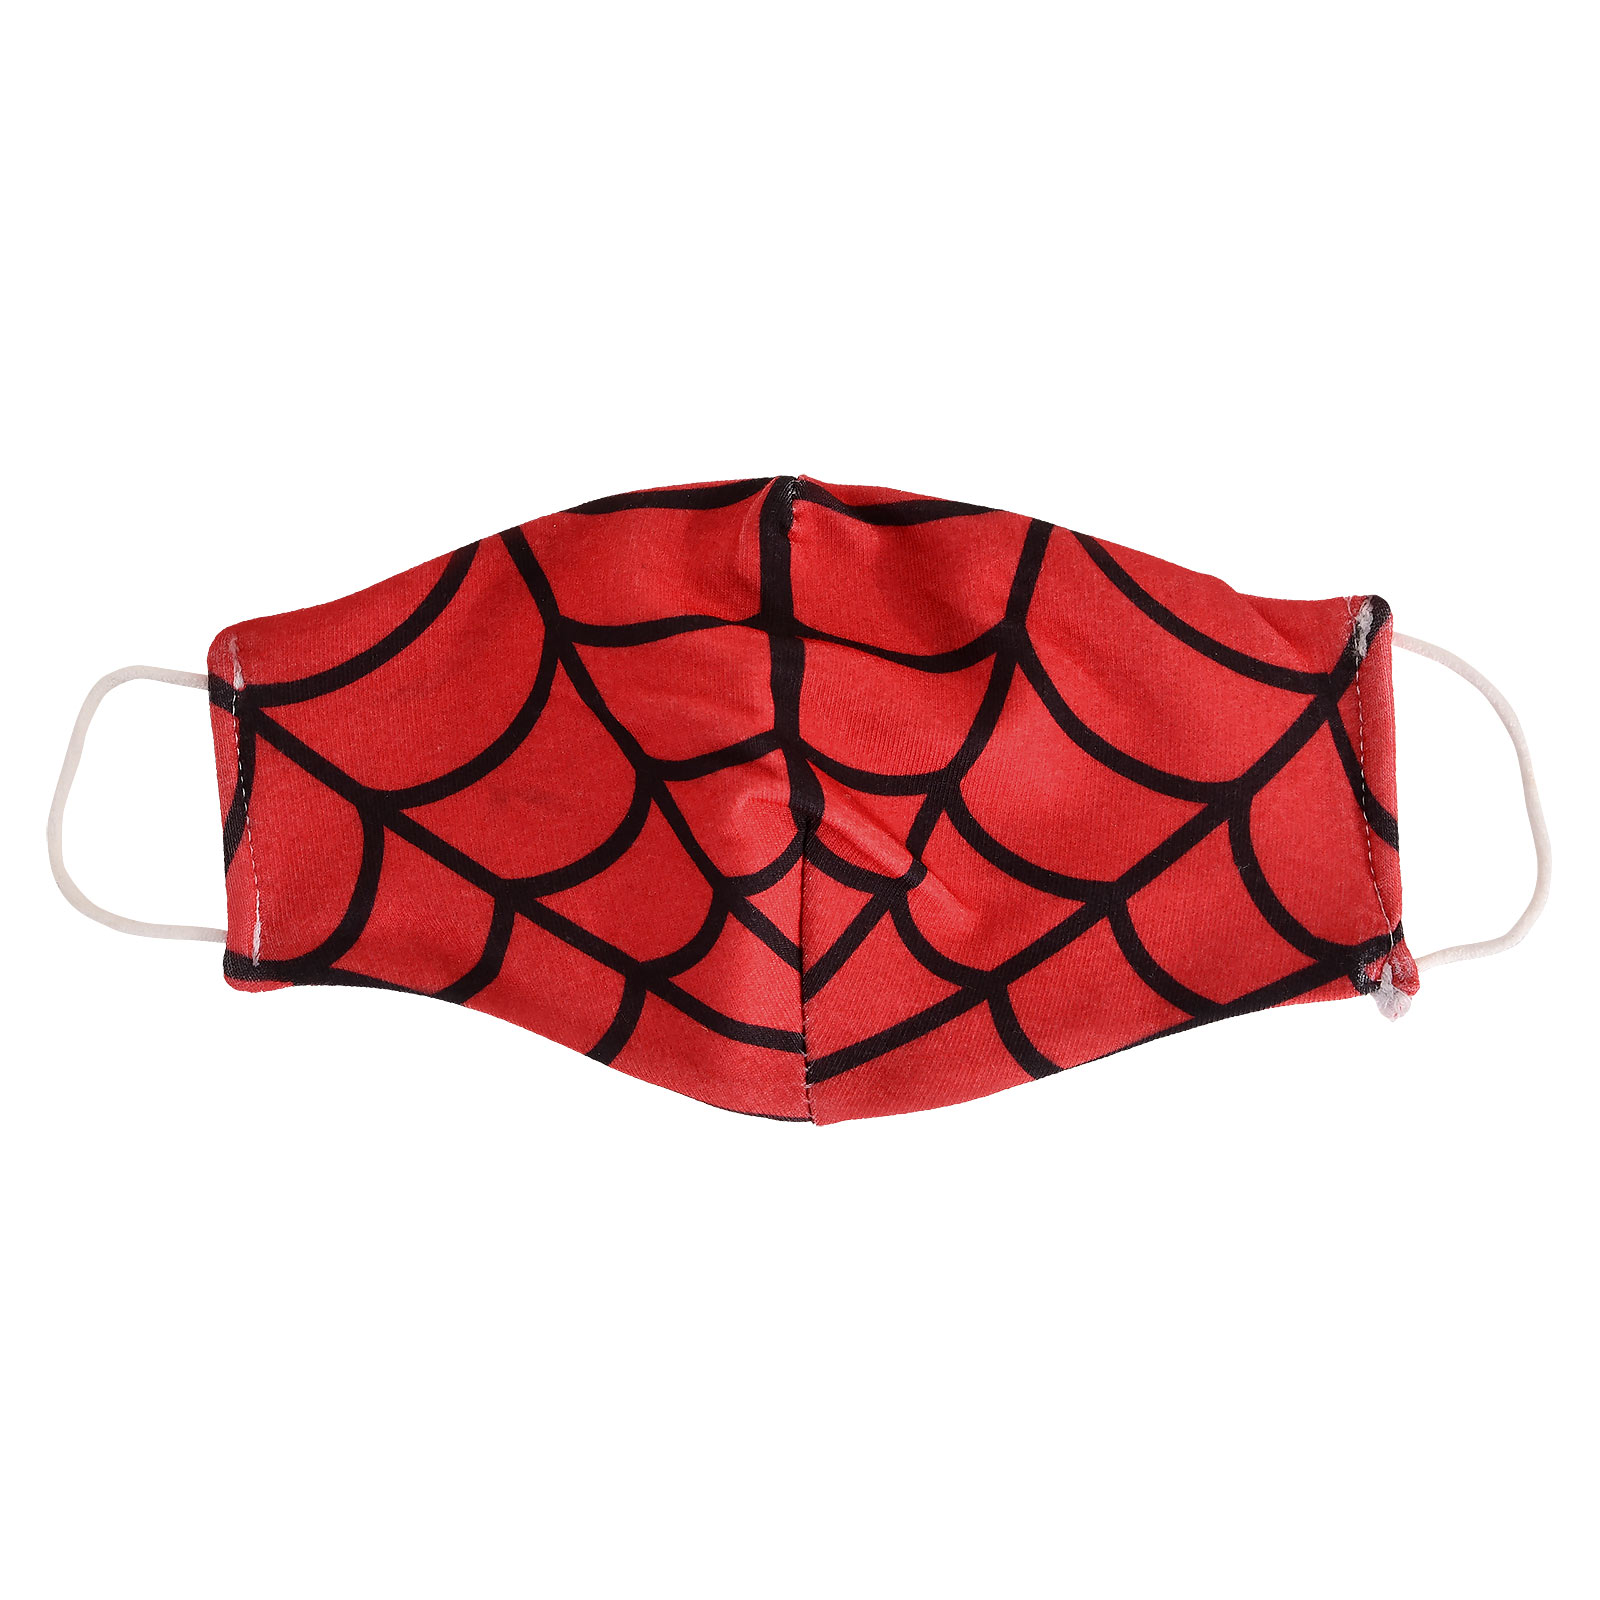 Masque facial toile d'araignée pour fans de Spider-Man Rouge